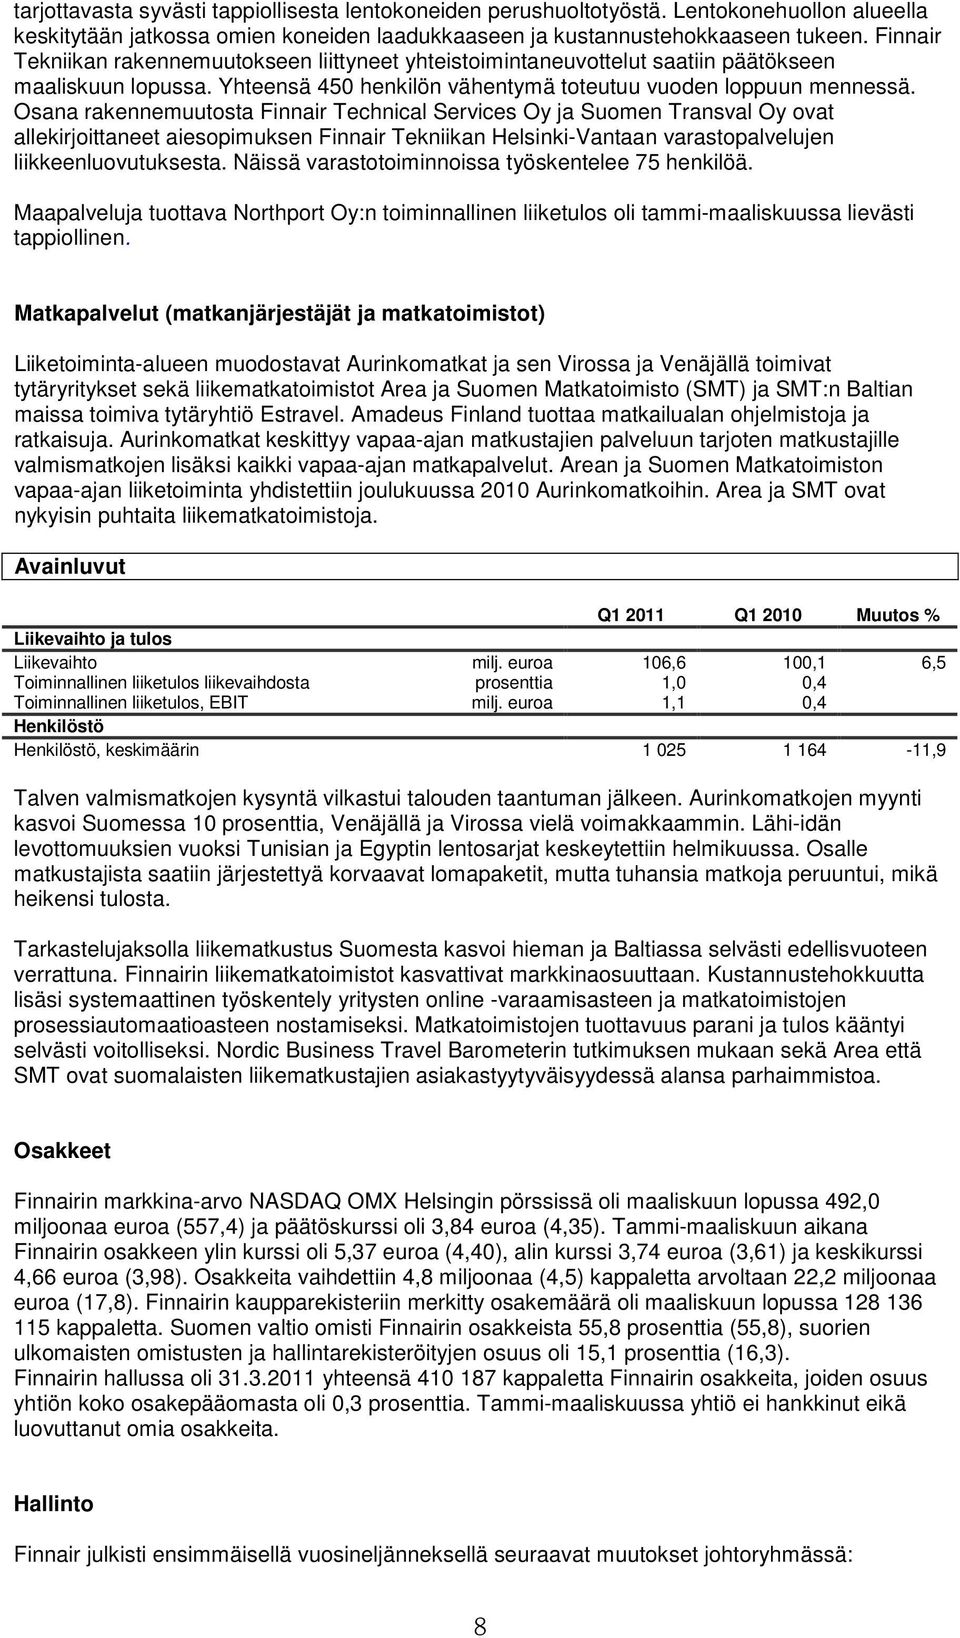 Osana rakennemuutosta Finnair Technical Services Oy ja Suomen Transval Oy ovat allekirjoittaneet aiesopimuksen Finnair Tekniikan Helsinki-Vantaan varastopalvelujen liikkeenluovutuksesta.